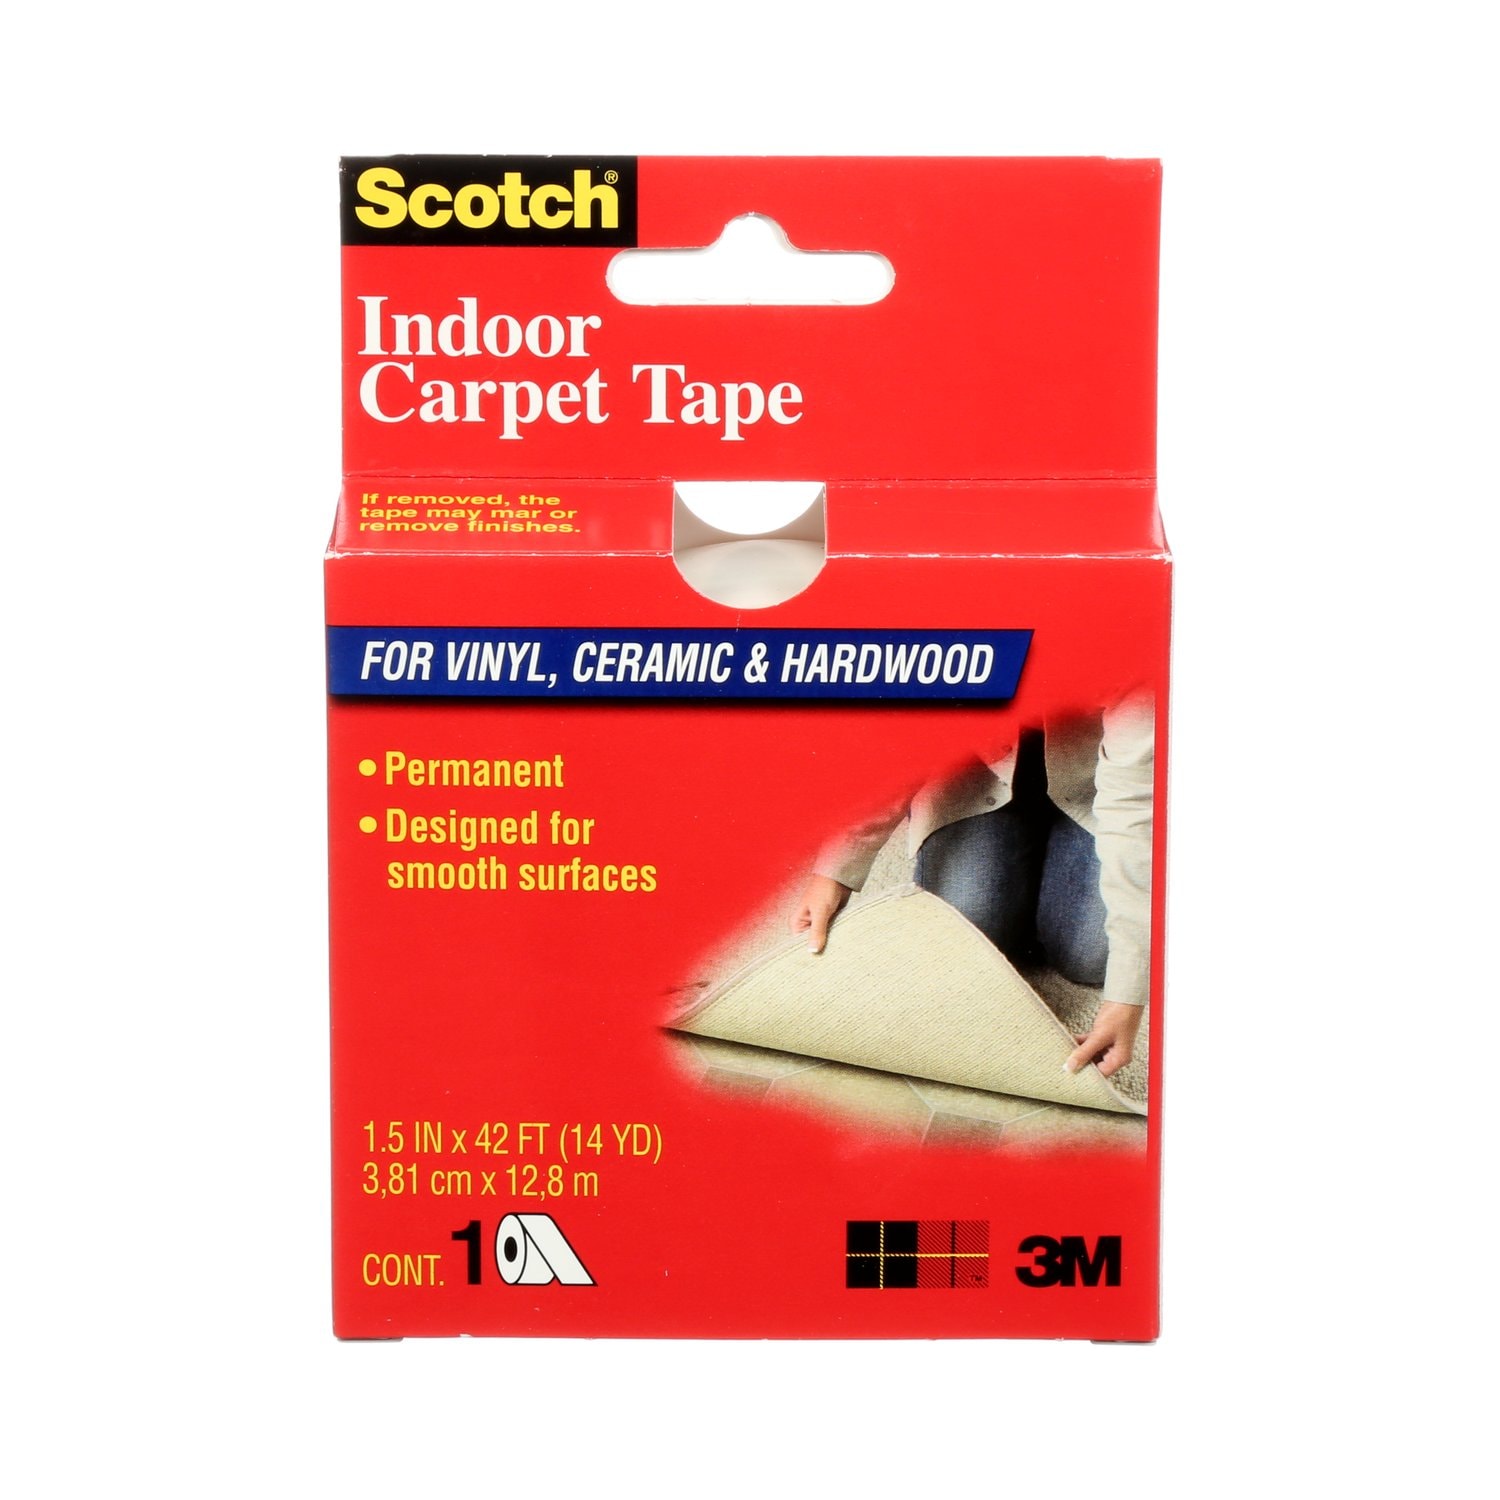 7010410465 - Scotch Indoor Carpet Tape CT2010, 1.5 in x 42 ft (38.1 mm x 12.8
m), Carpet Tape